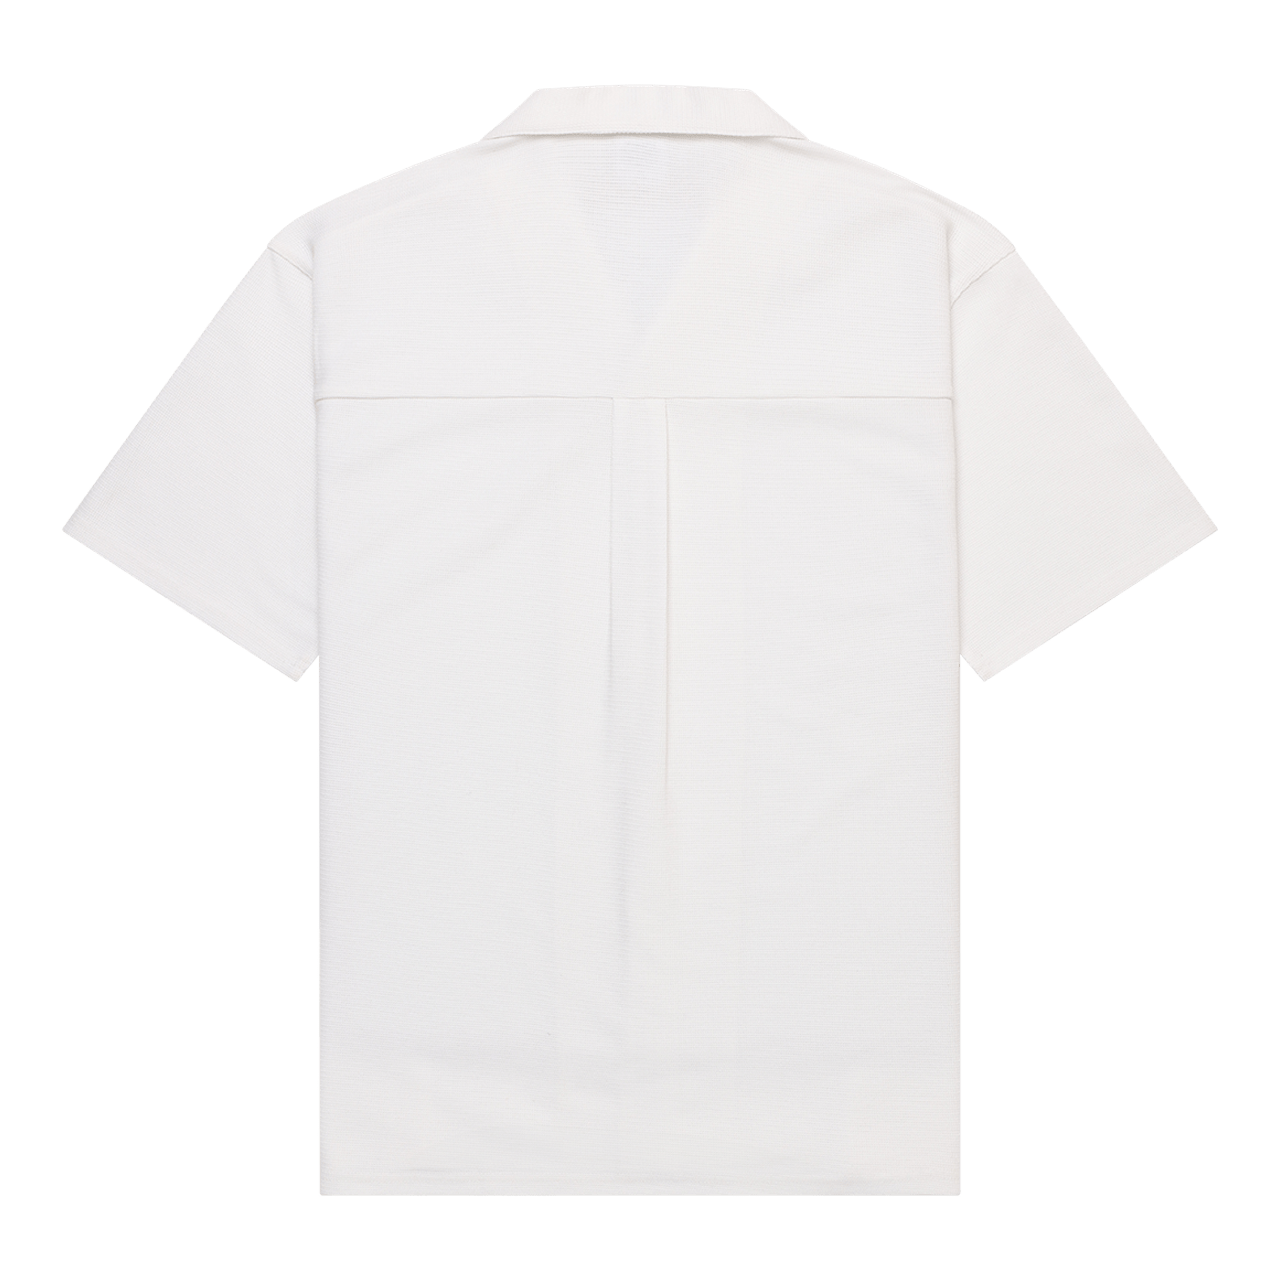 Lagoon Cropped Resort Shirt in White | Nomadic Paradise